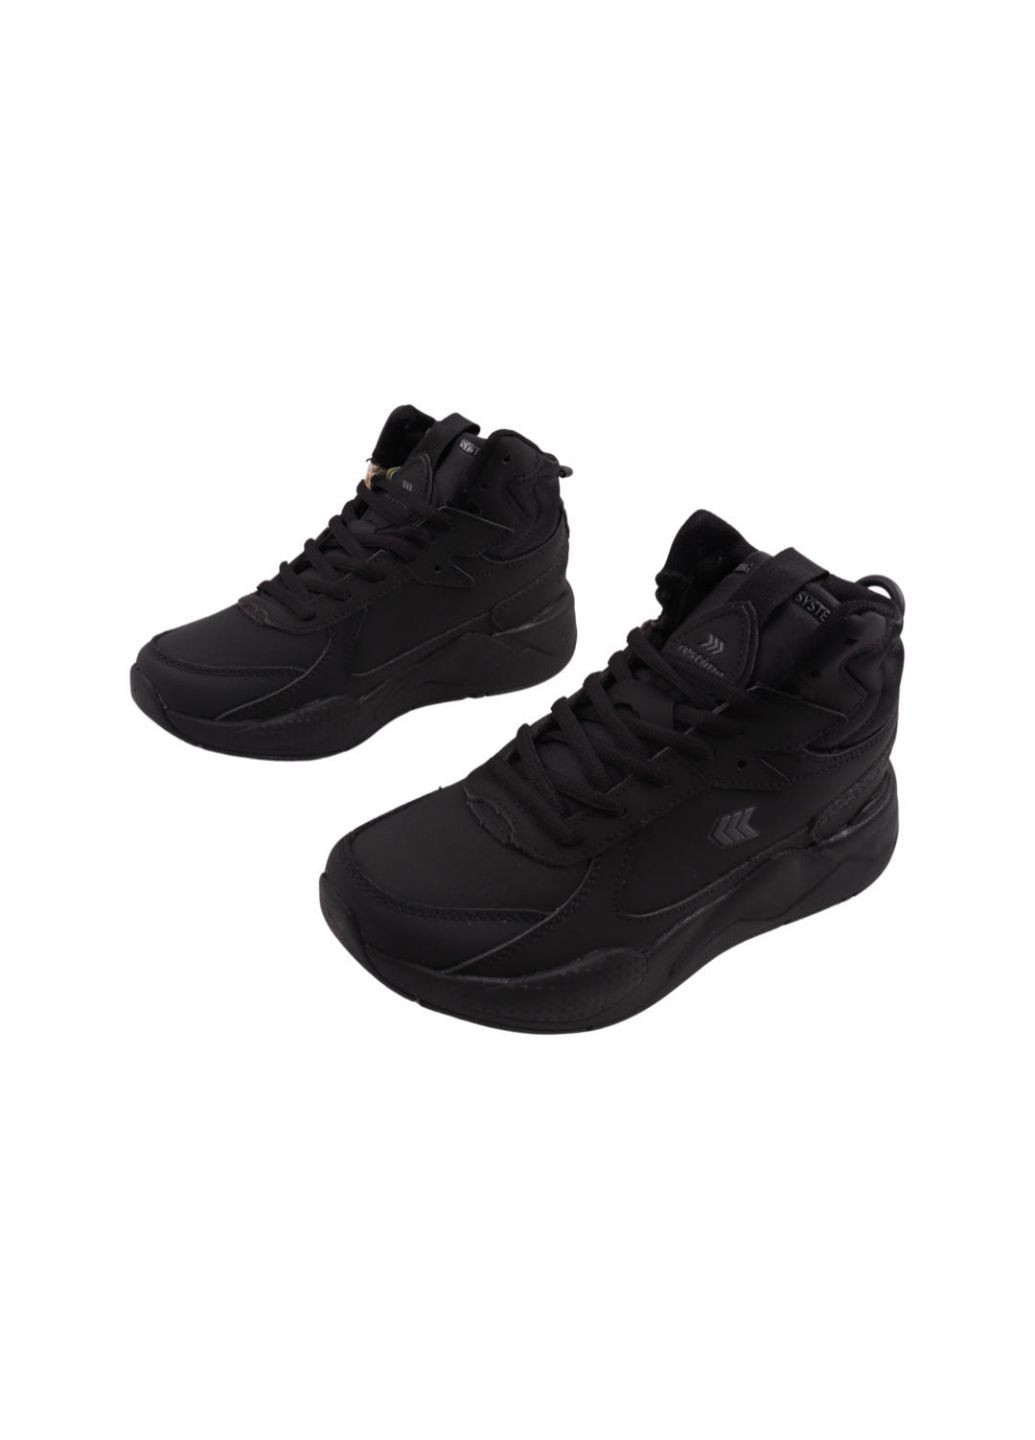 Черные ботинки мужские черные натуральная кожа Restime 220-22DHS